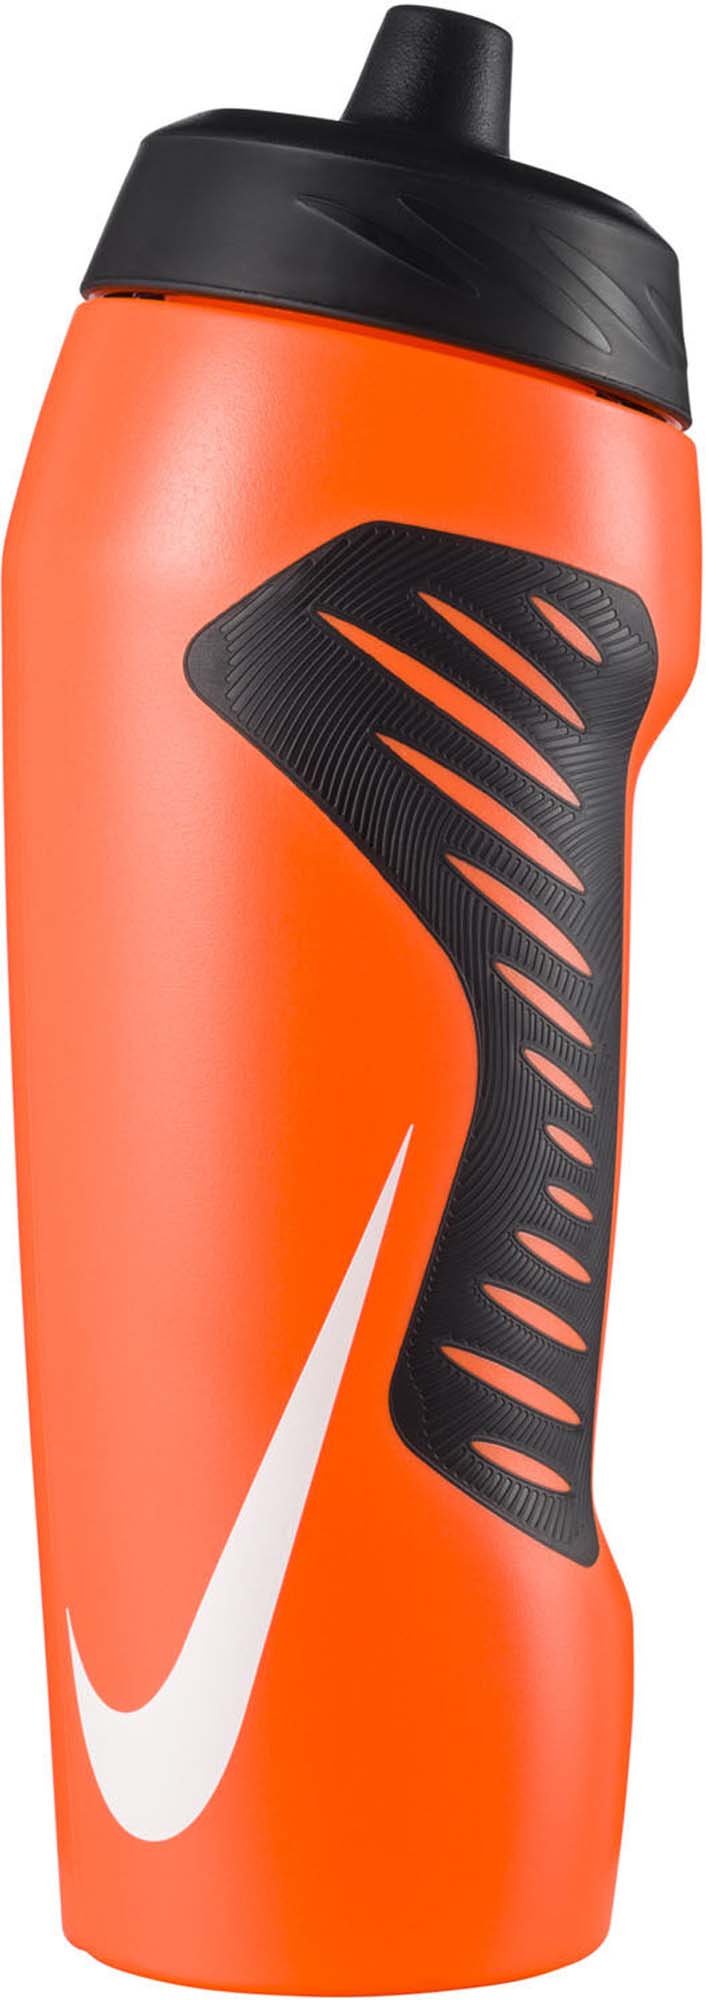 Nike accessoires nike hyperfuel water bottle 24oz